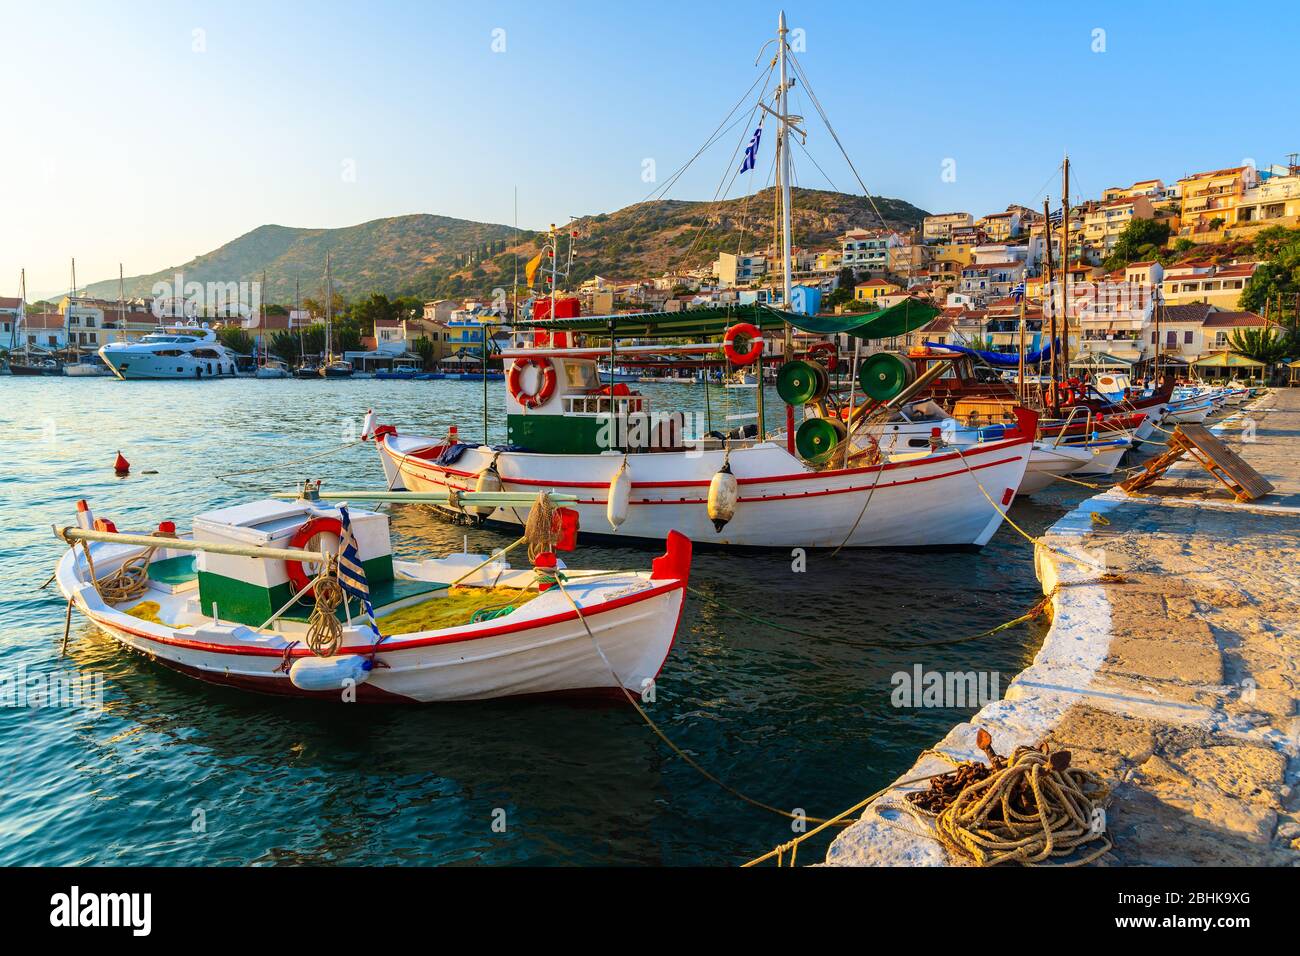 ISLA SAMOS, GRECIA - 18 DE SEPTIEMBRE de 2015: Hermosos barcos de pesca tradicionales en el puerto de Pythagorion al atardecer, isla Samos, Grecia. Foto de stock